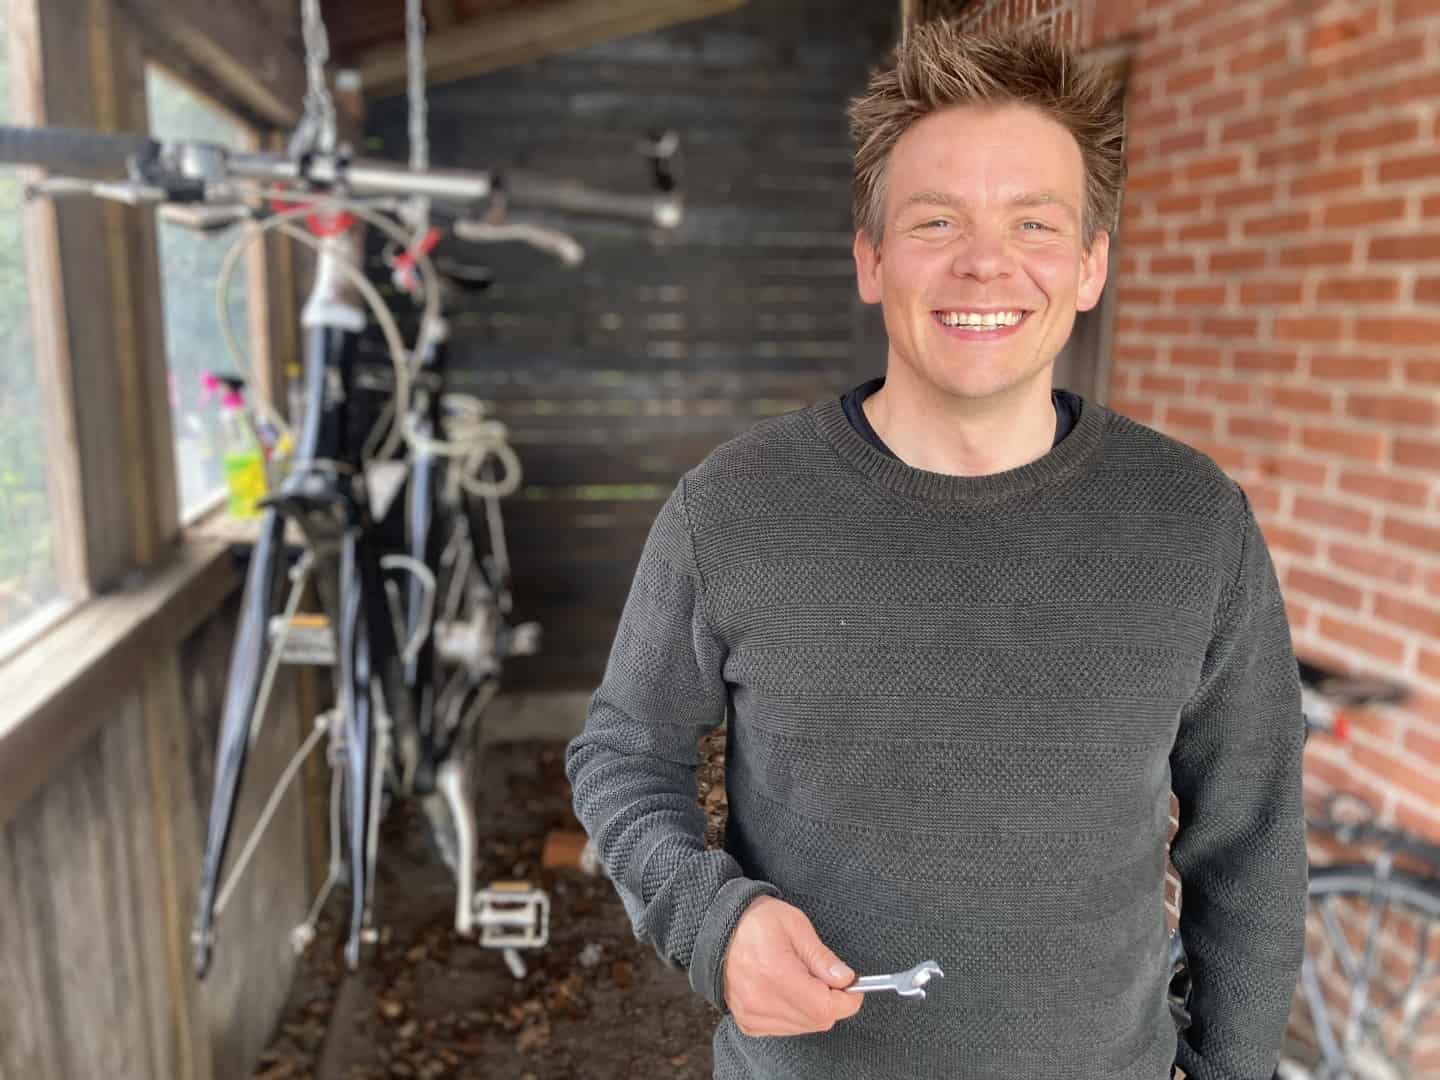 Glemte cykler glædestårer | Tranbjerg-MårsletLIV